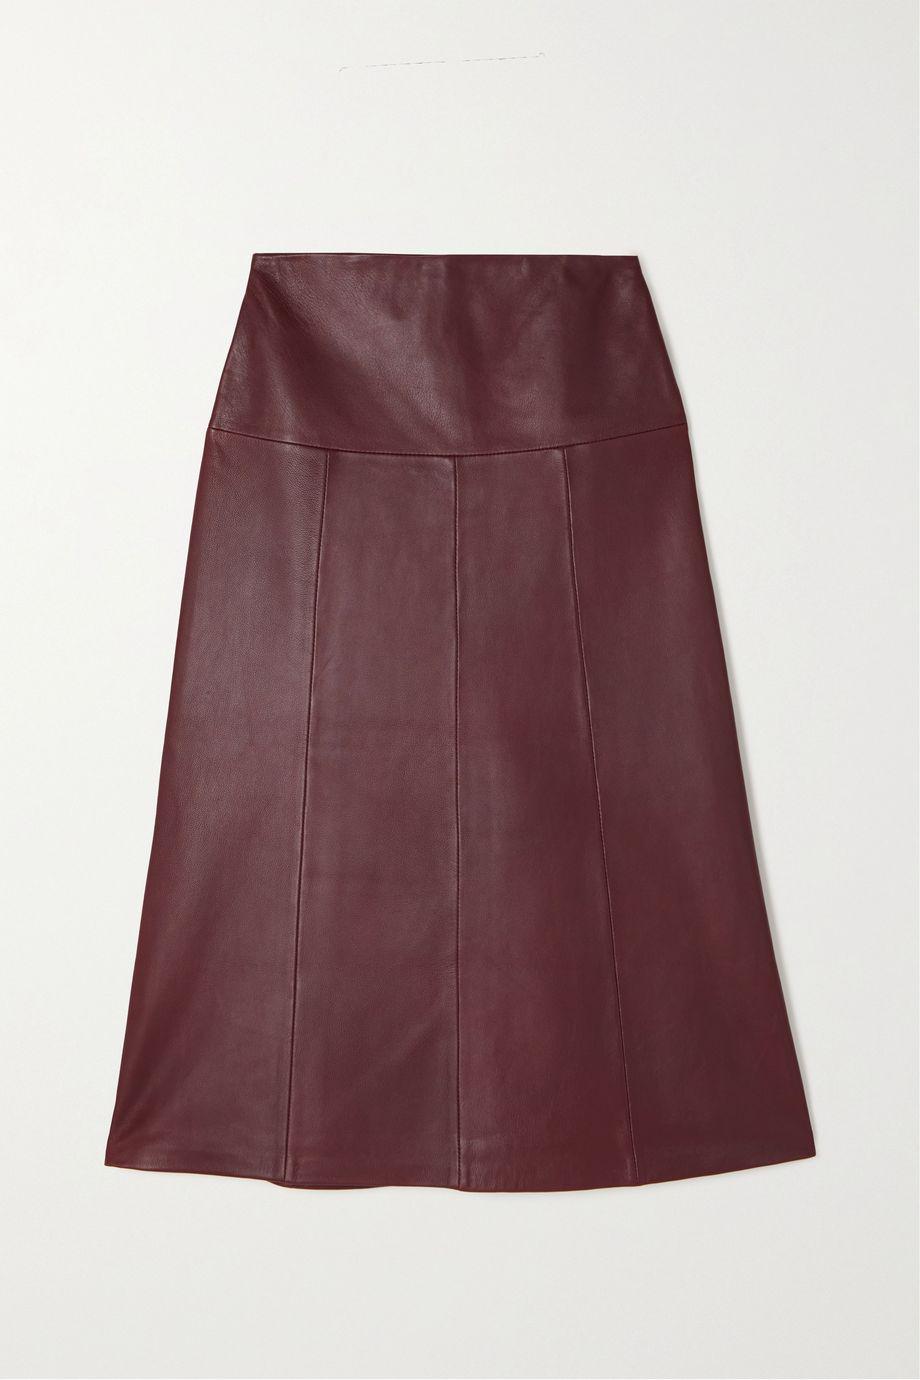 Tiana leather midi skirt by CEFINN